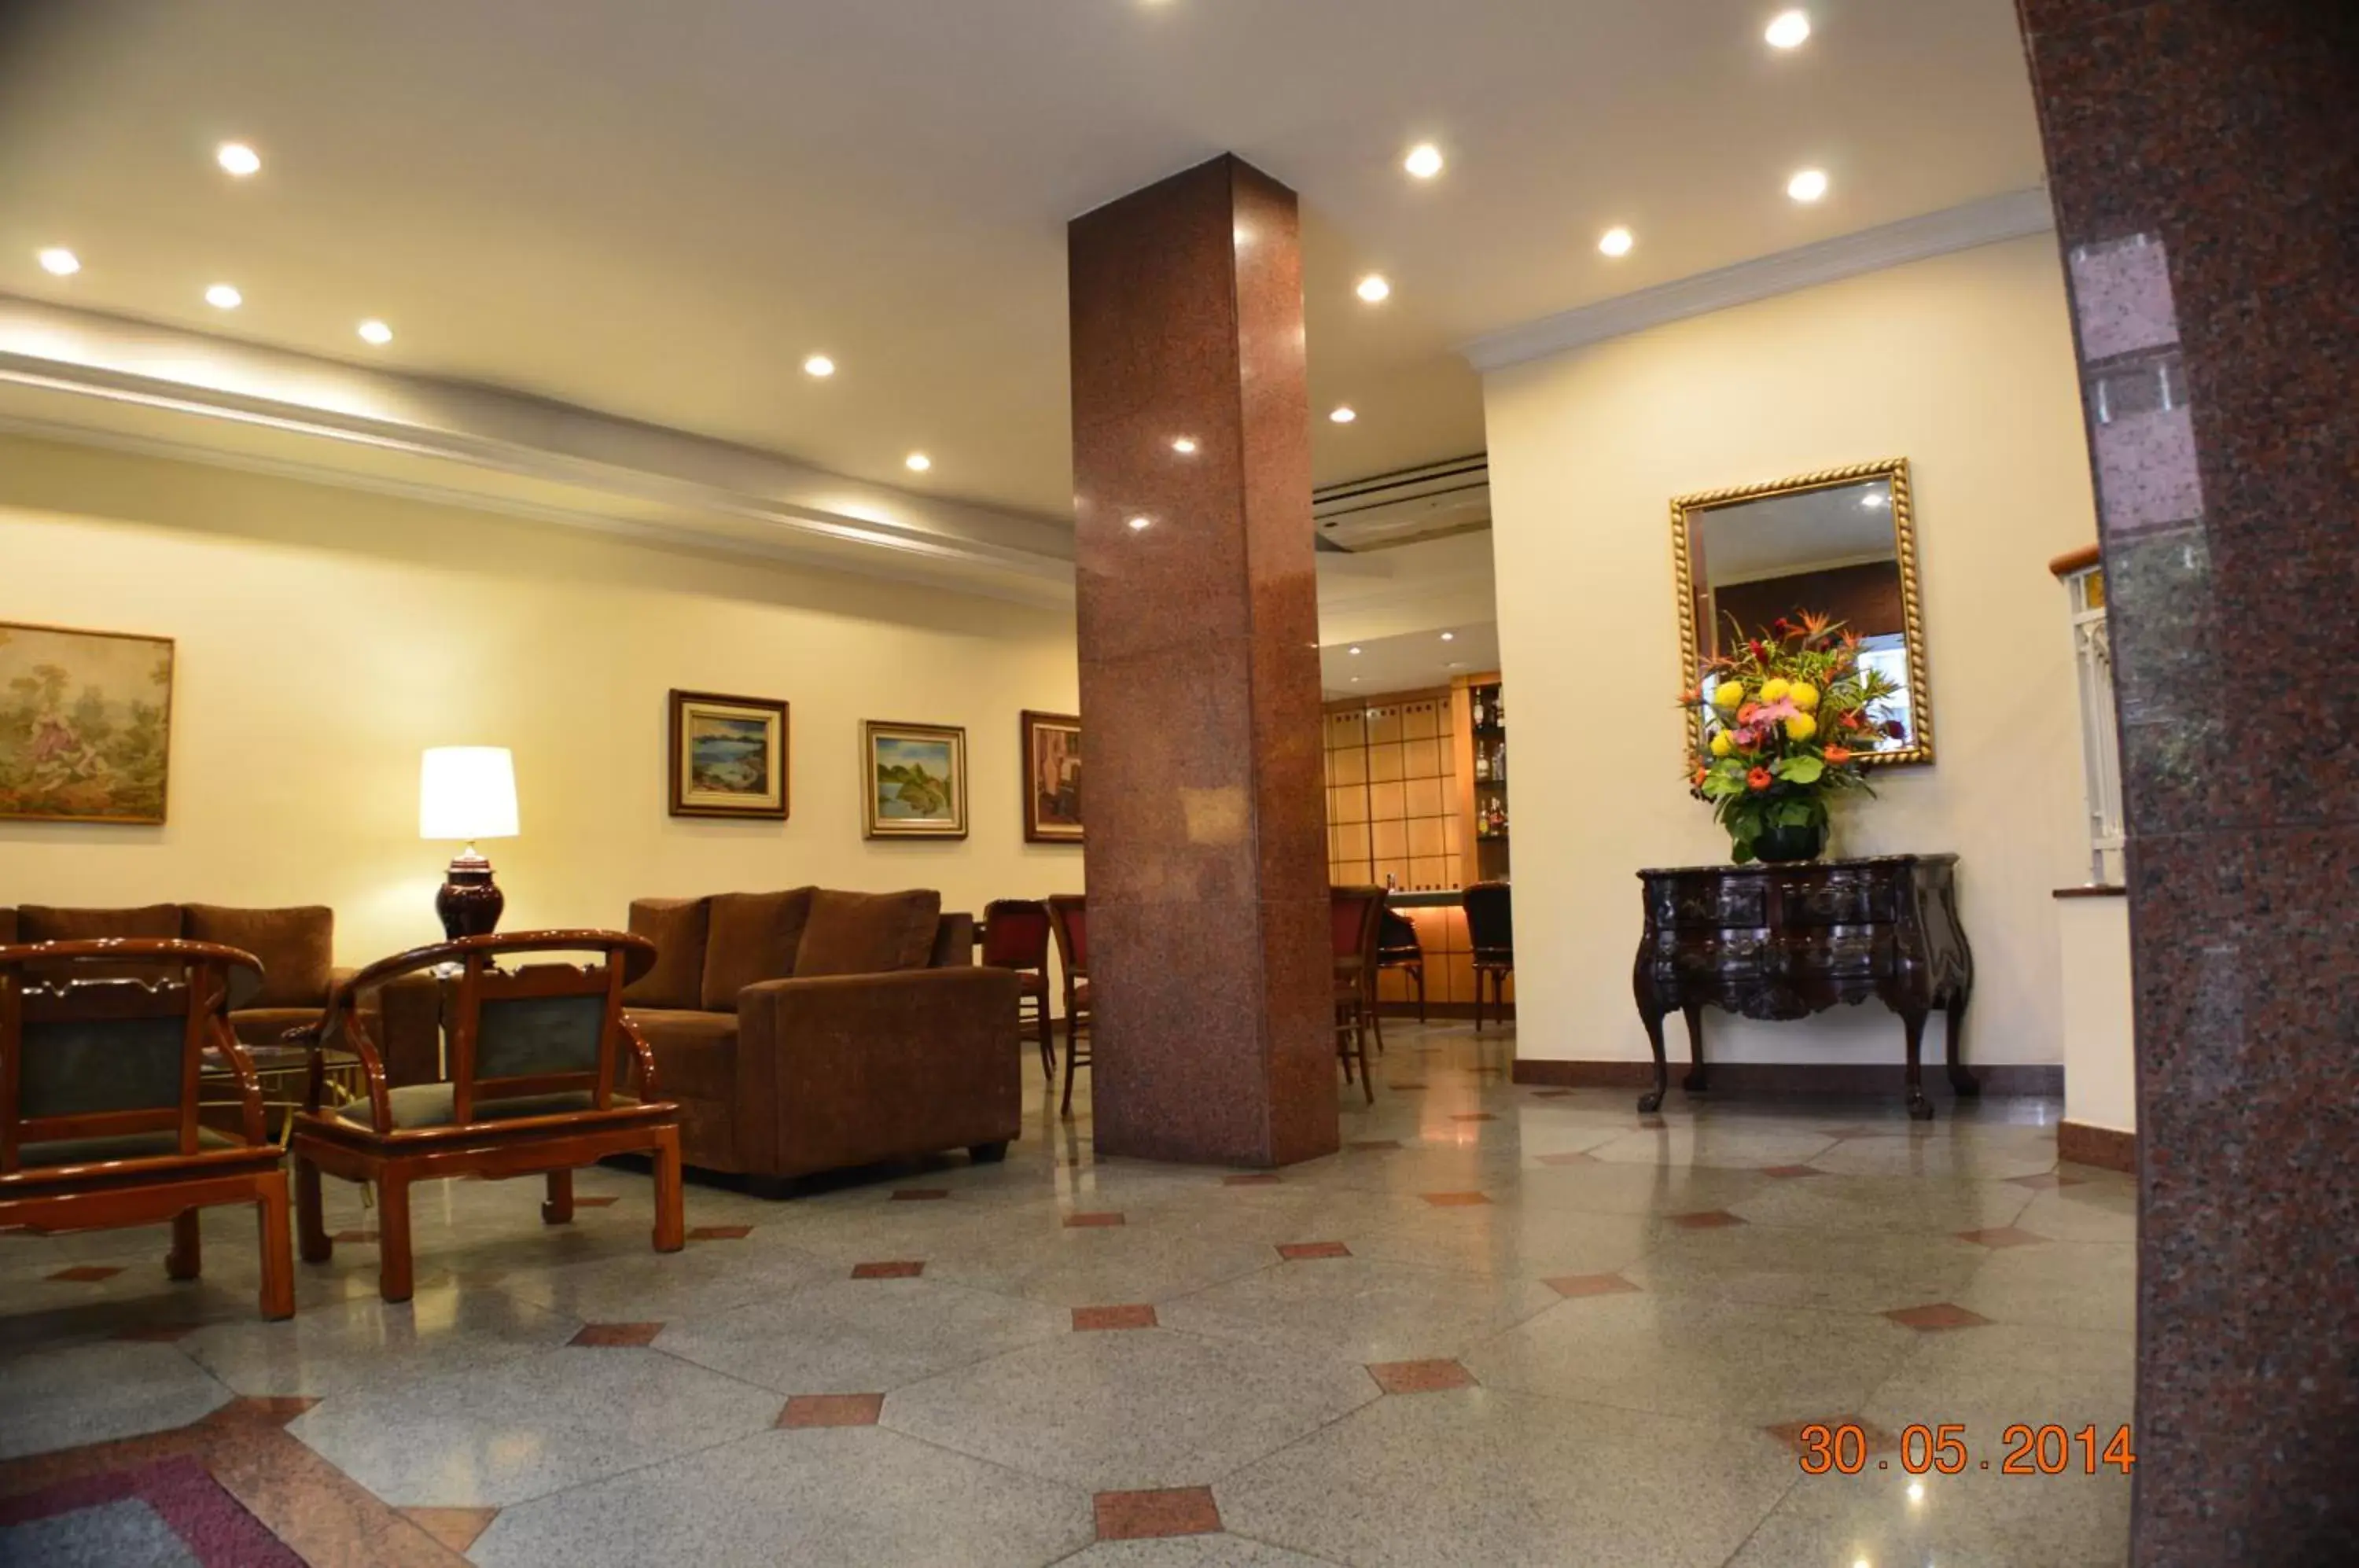 Lobby or reception, Lobby/Reception in Hotel Canada